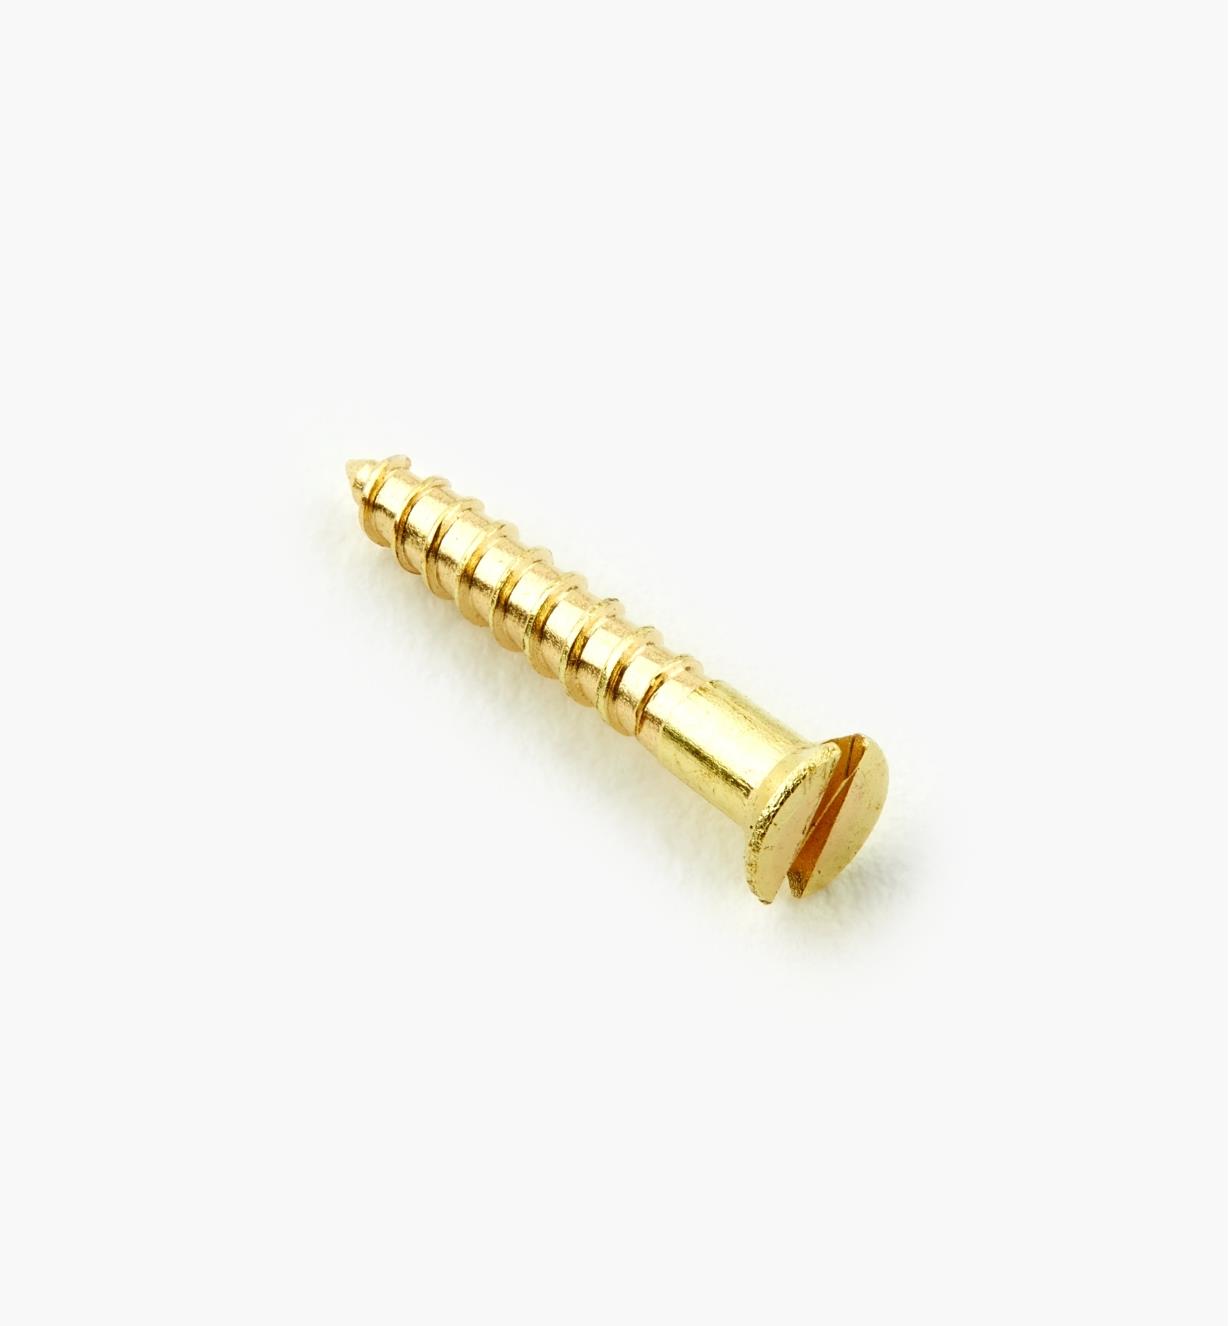 91Z0103 - #1, 1/2" Flat Brass Screws, pkg. of 100